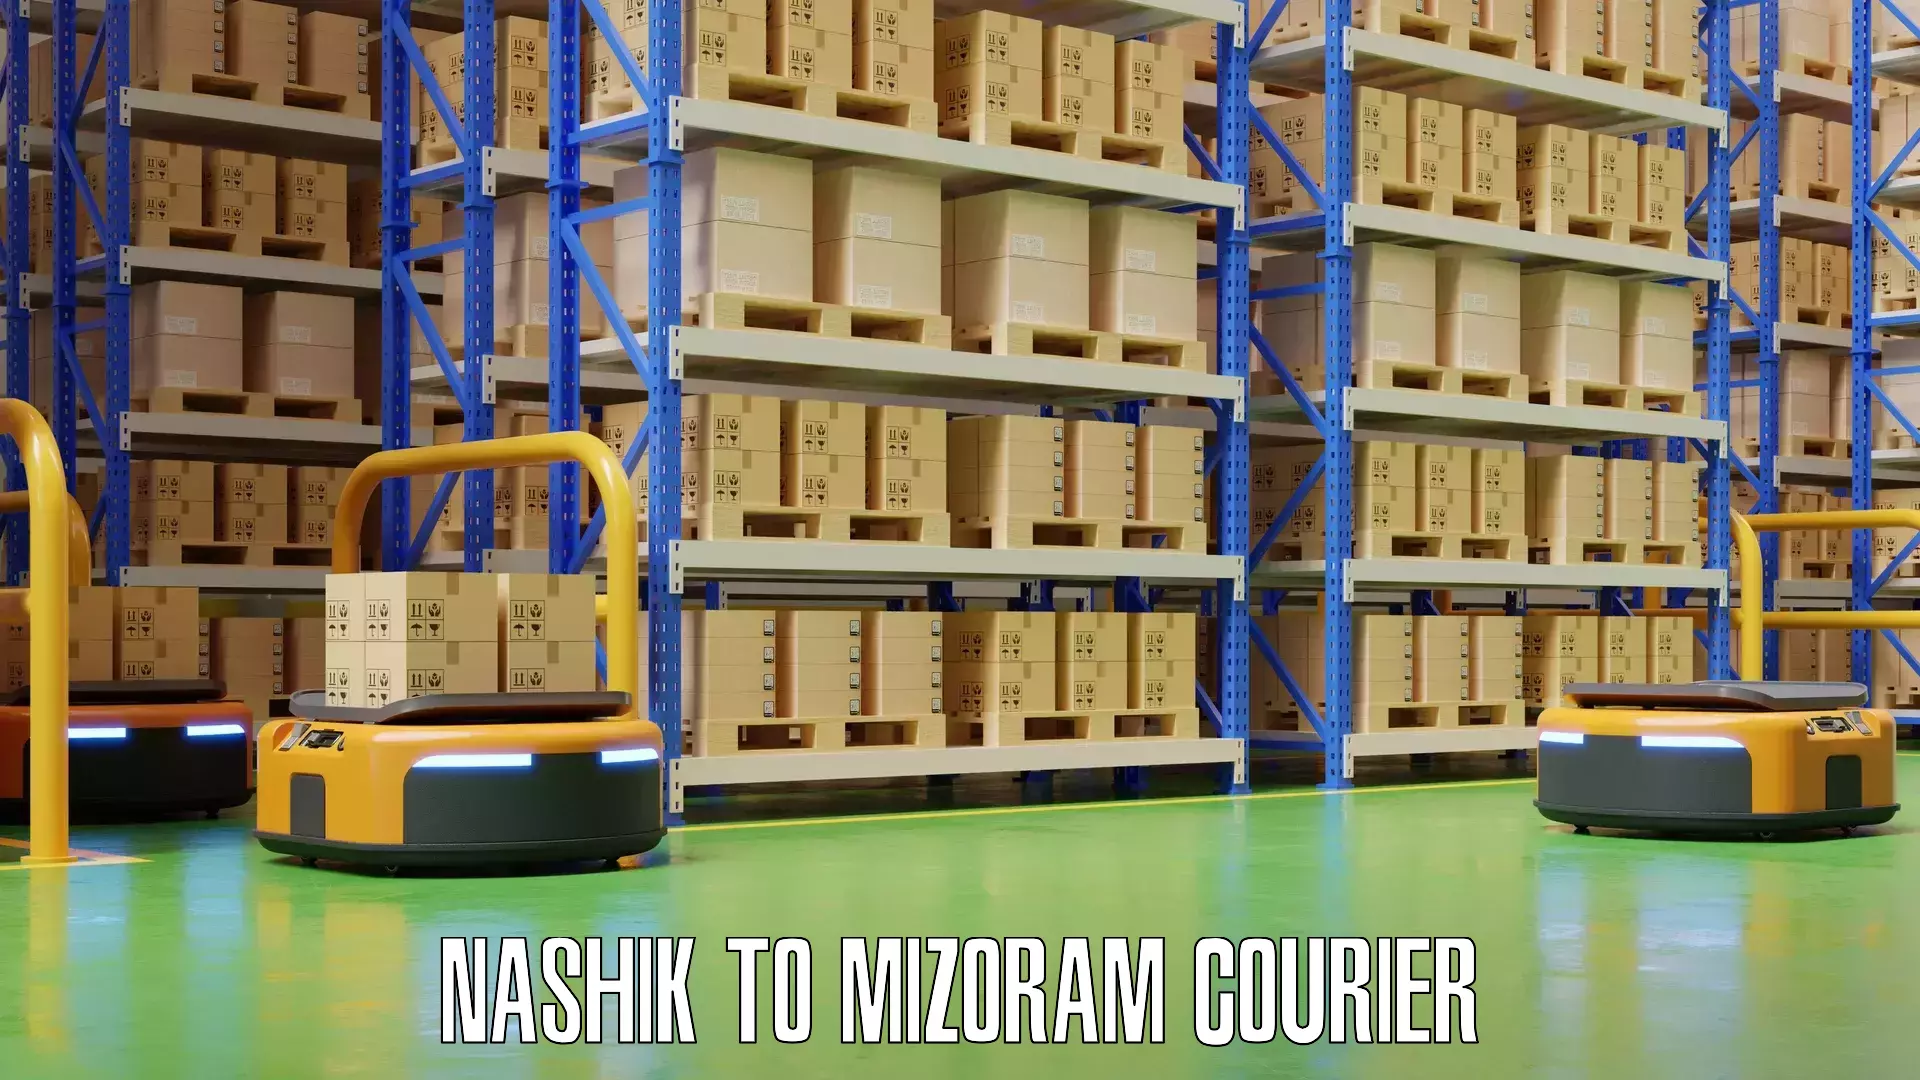 Baggage shipping schedule Nashik to Mizoram